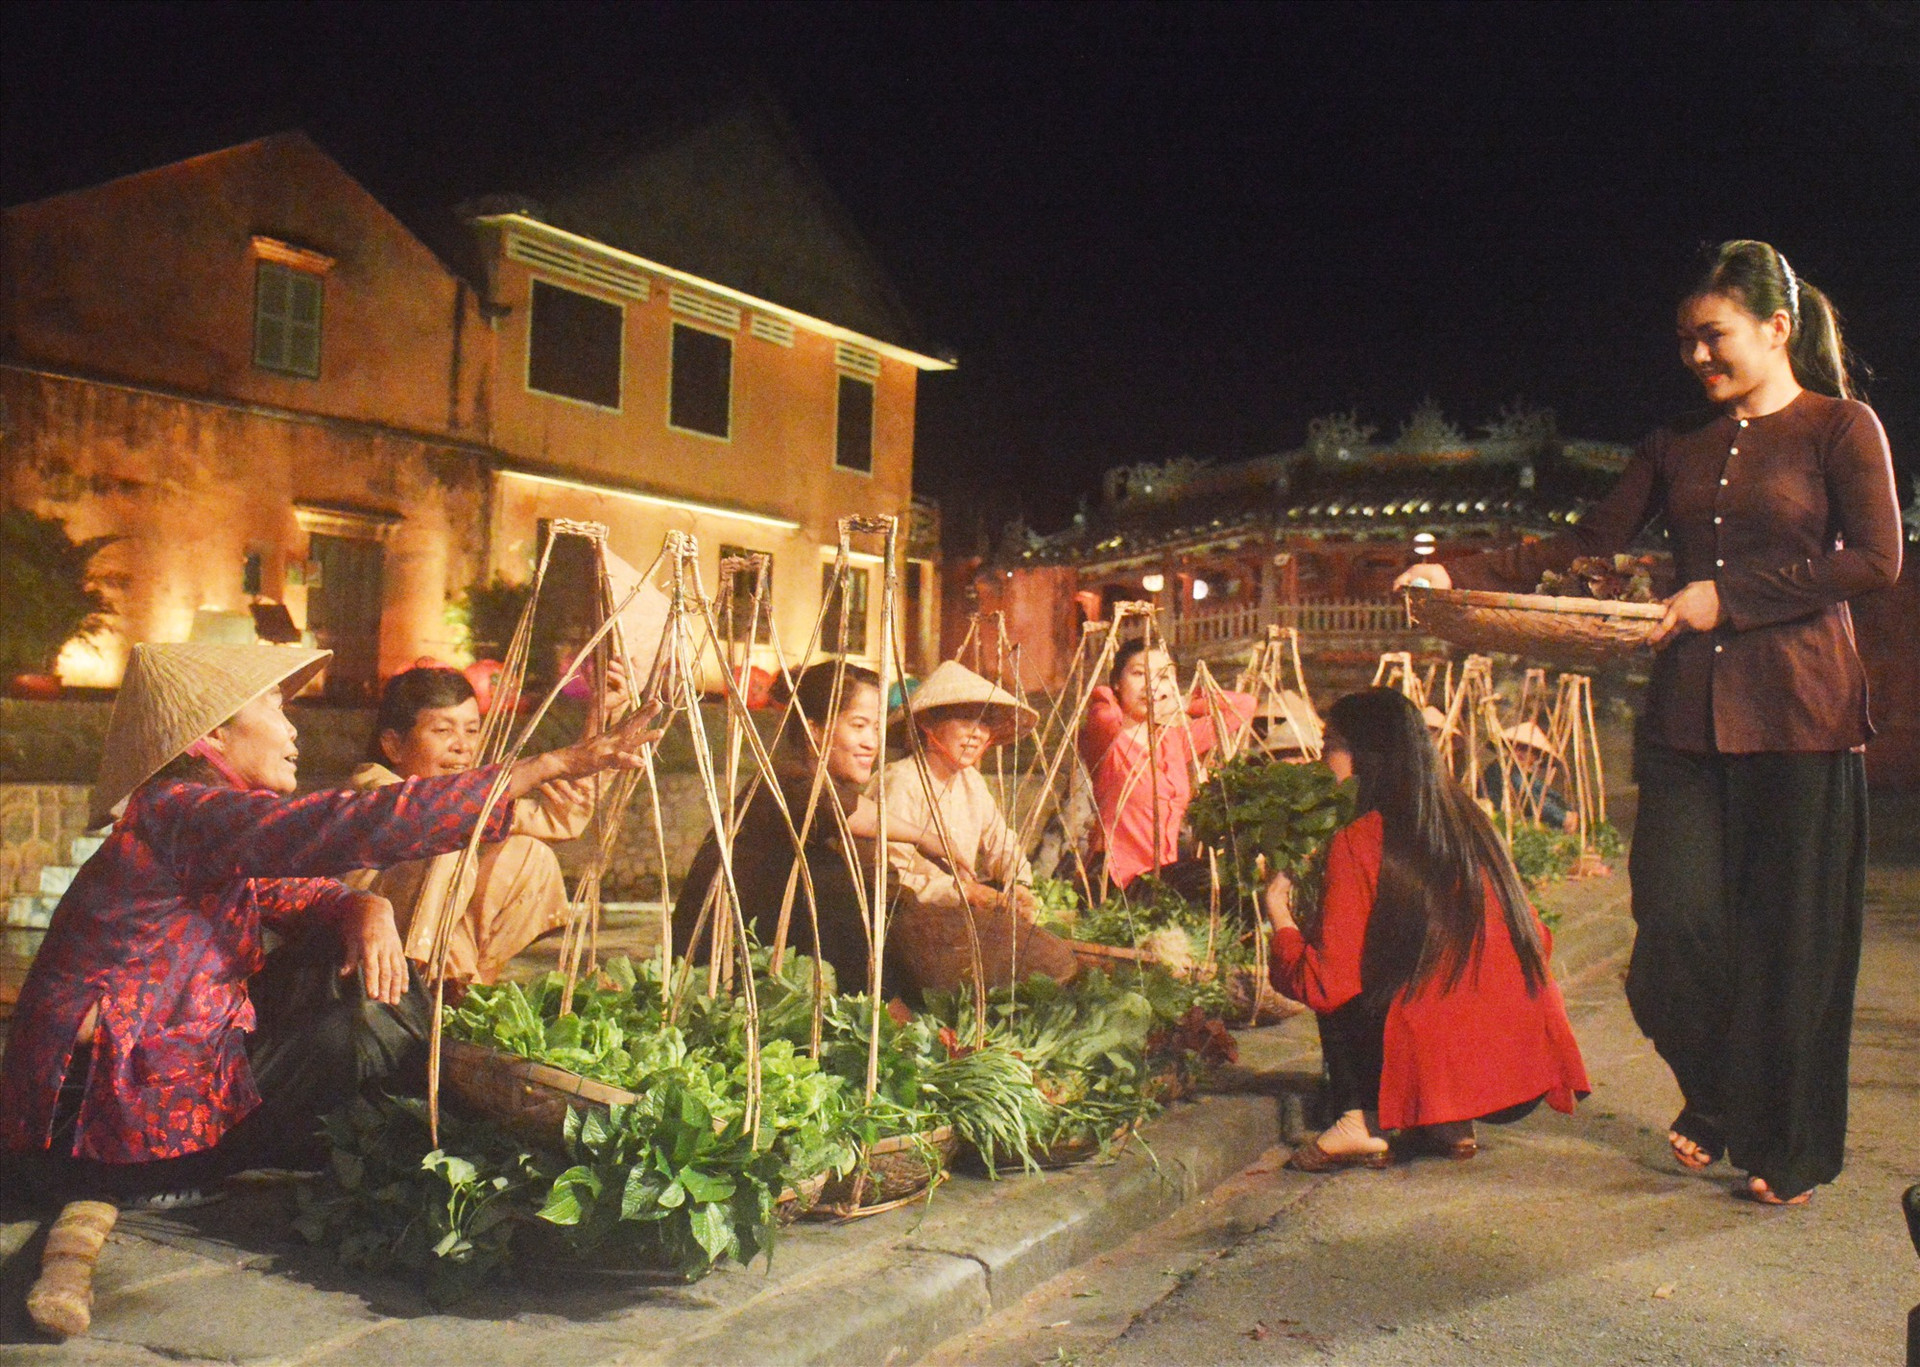 Đời sống thường nhật của người dân làng rau Trà Quế được tái hiện trong show diễn. Ảnh: T.L